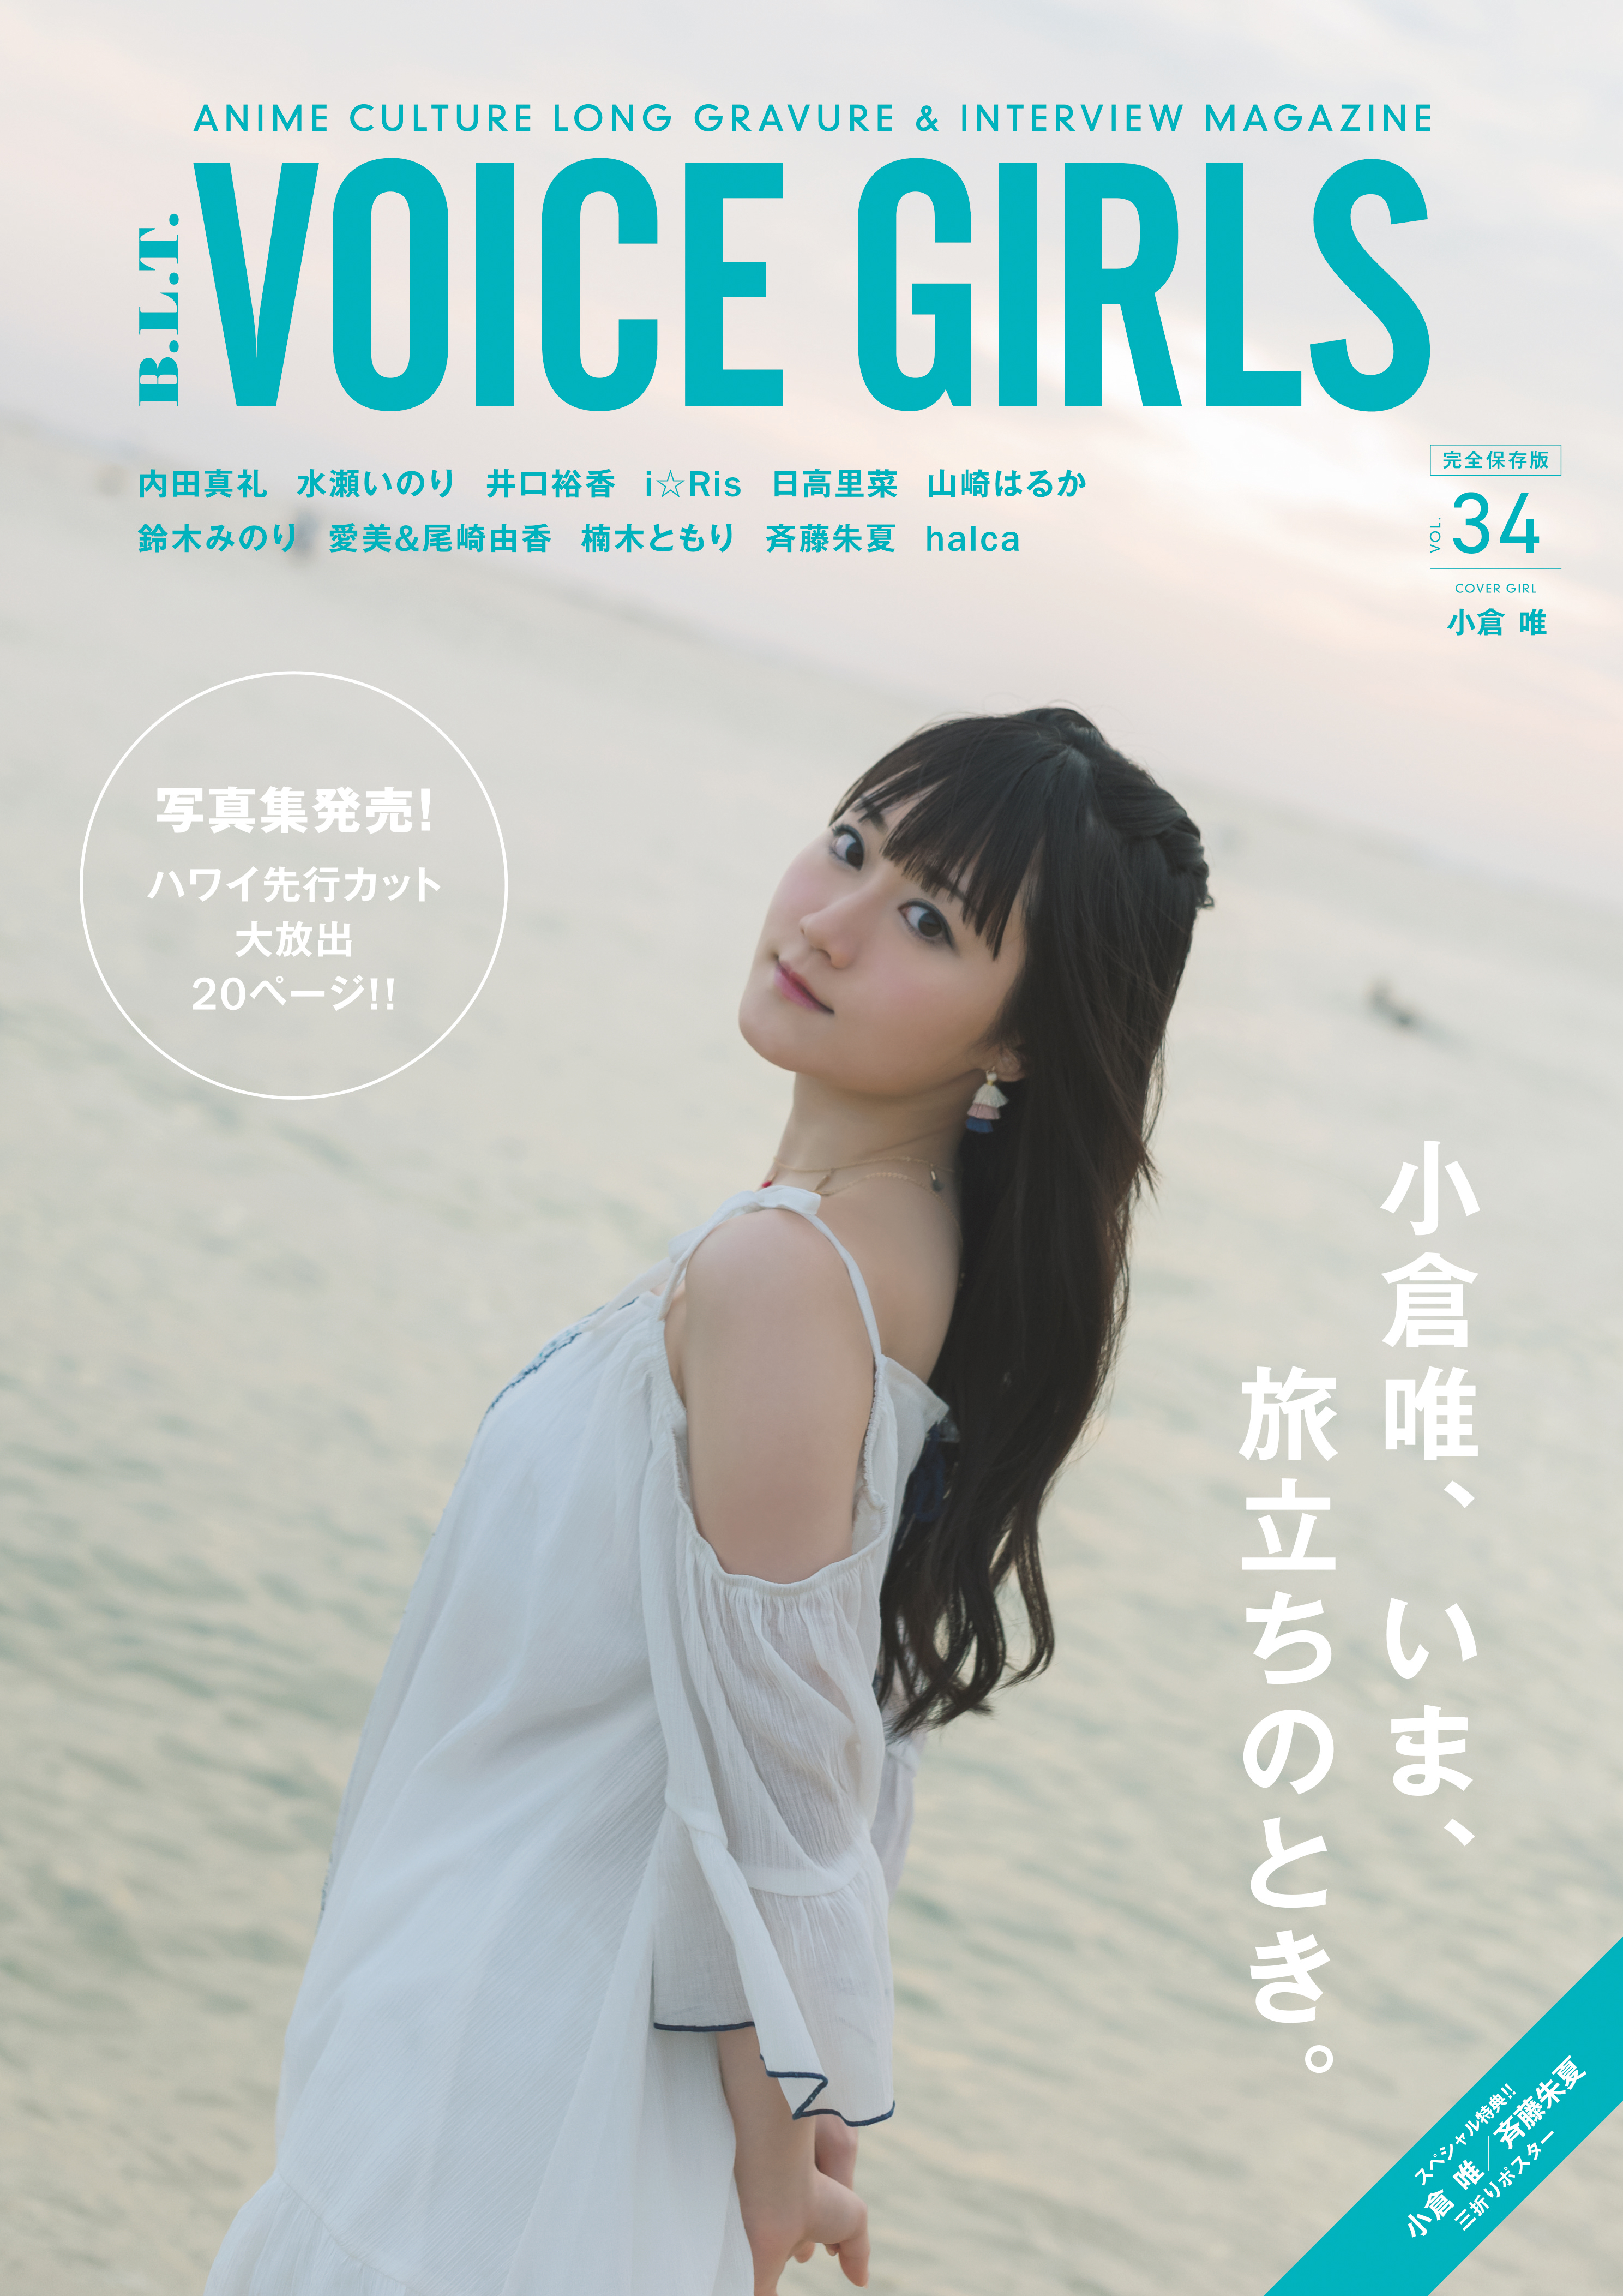 小倉唯 B L T Voice Girls Vol 34 の表紙 巻頭特集に登場 写真集のタイトルが ユイペース に決定 声優メモ帳